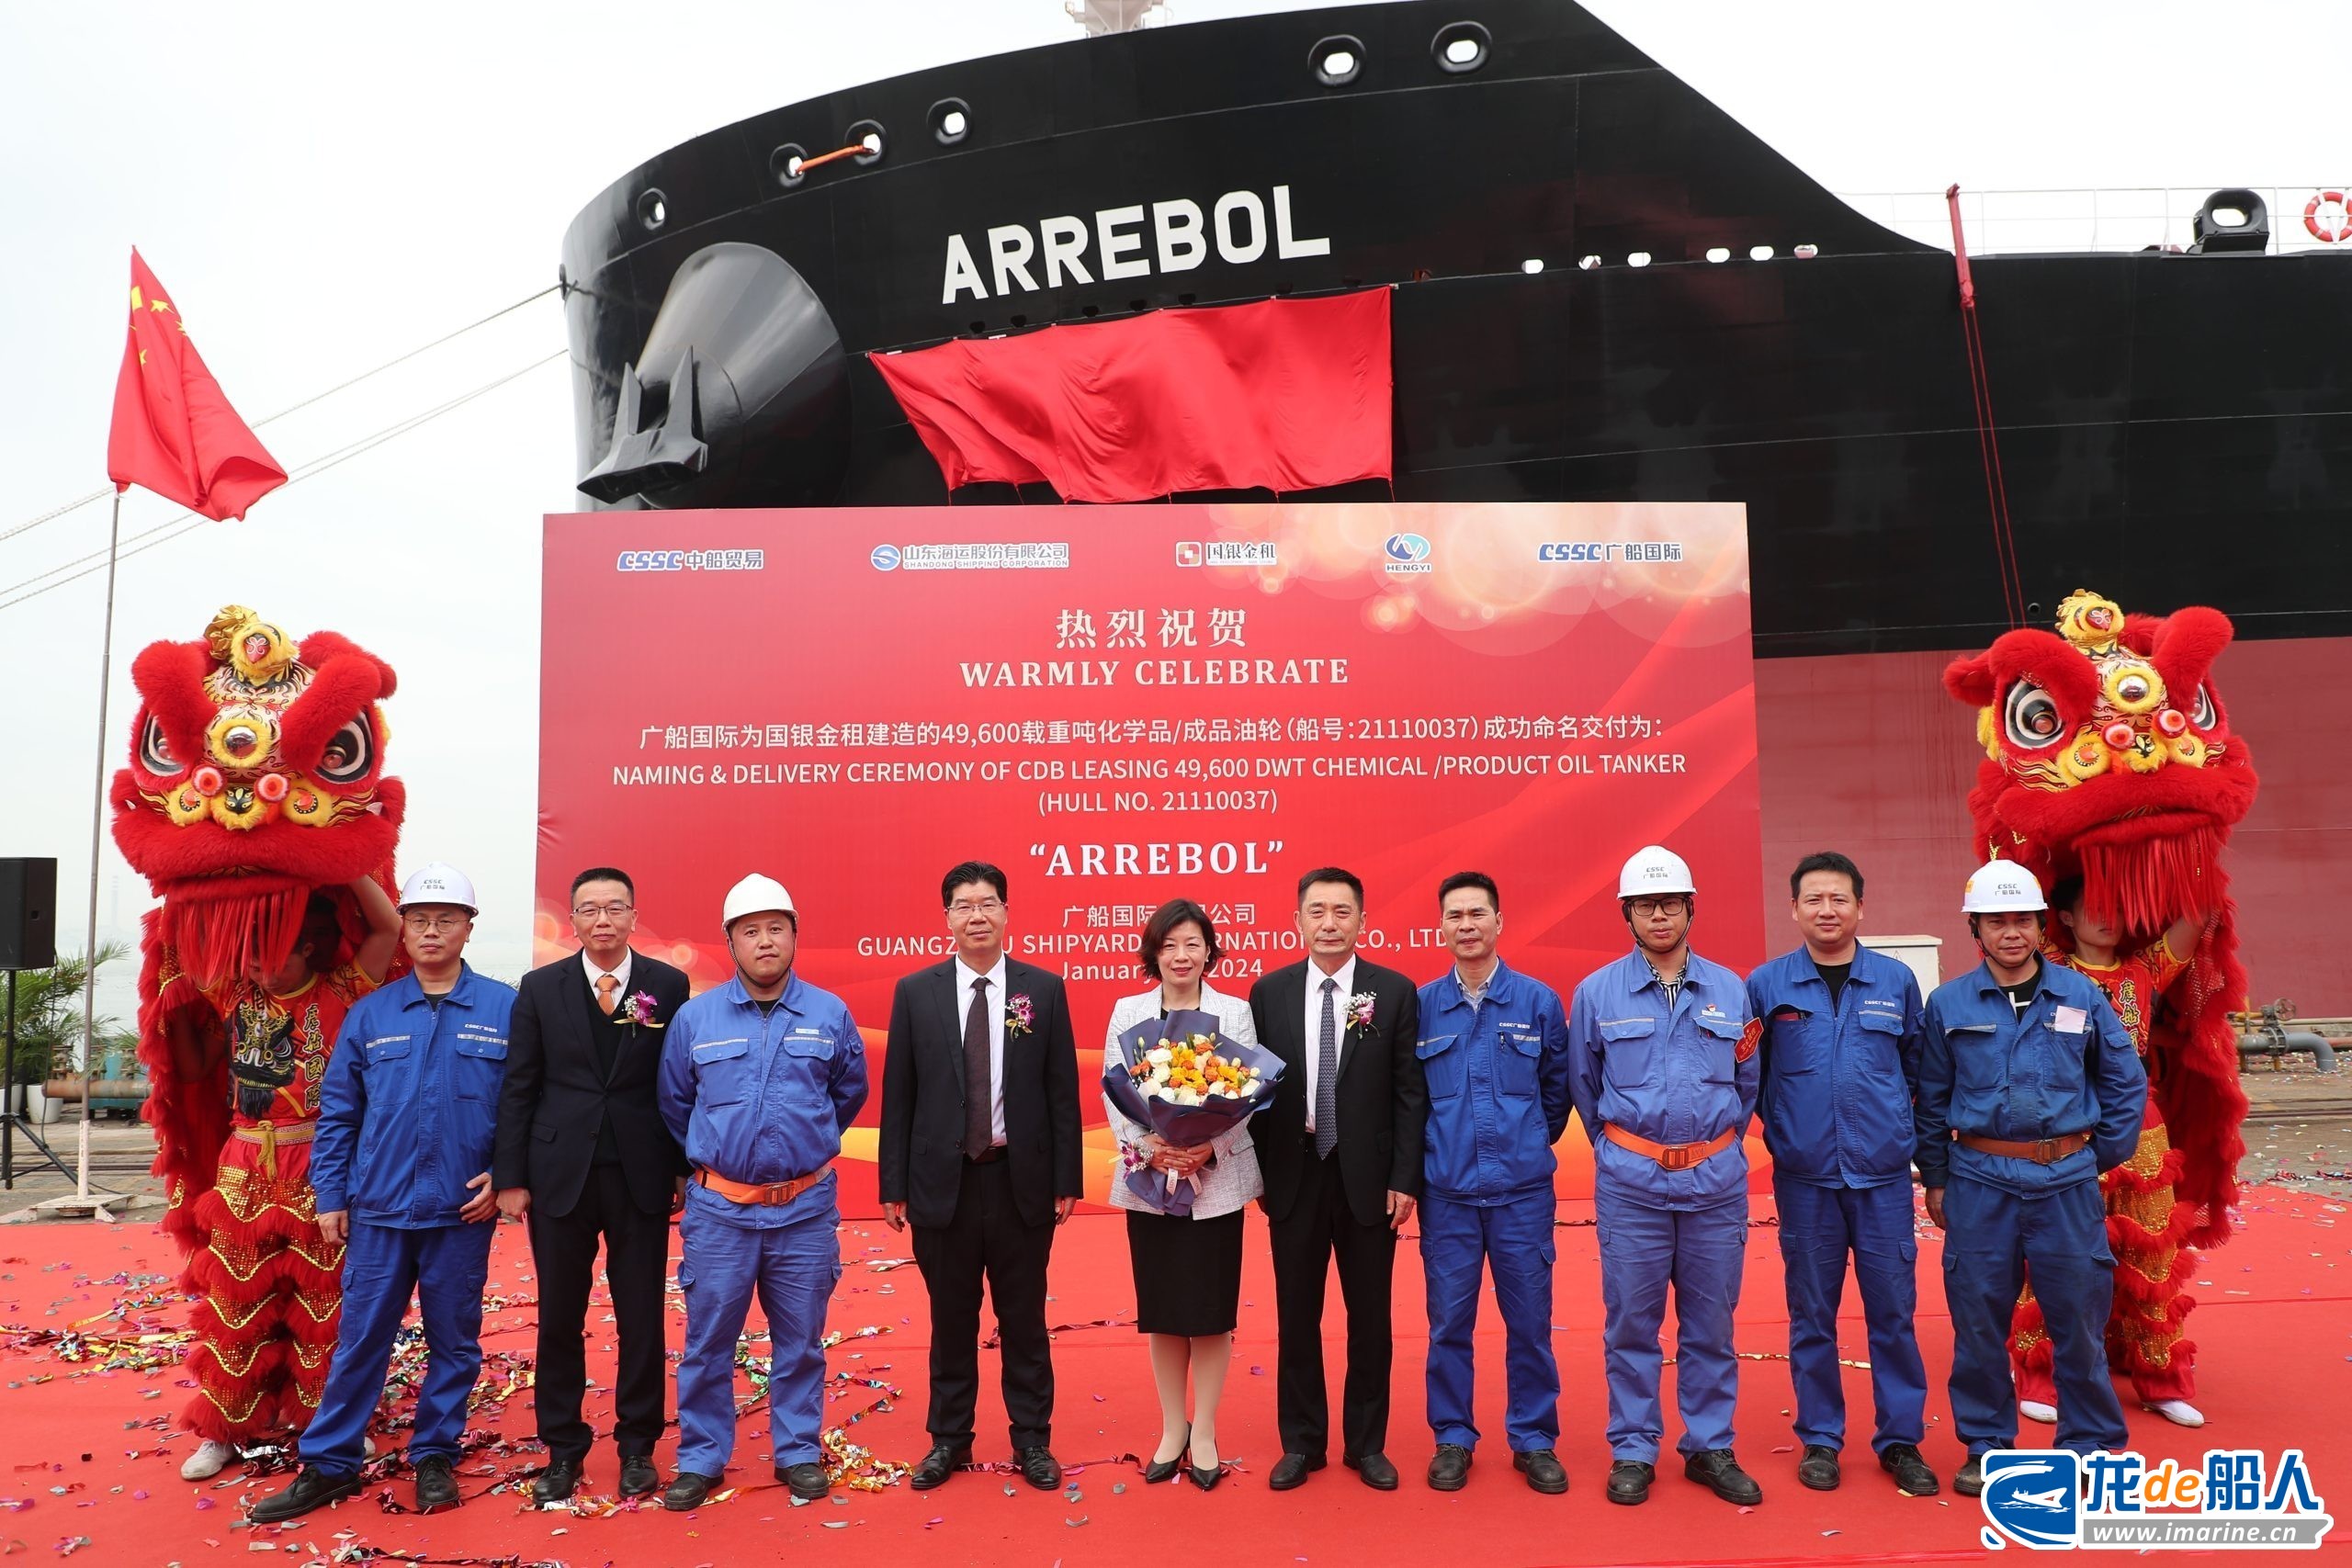 广船国际交付新一代MR油船“ARREBOL”号